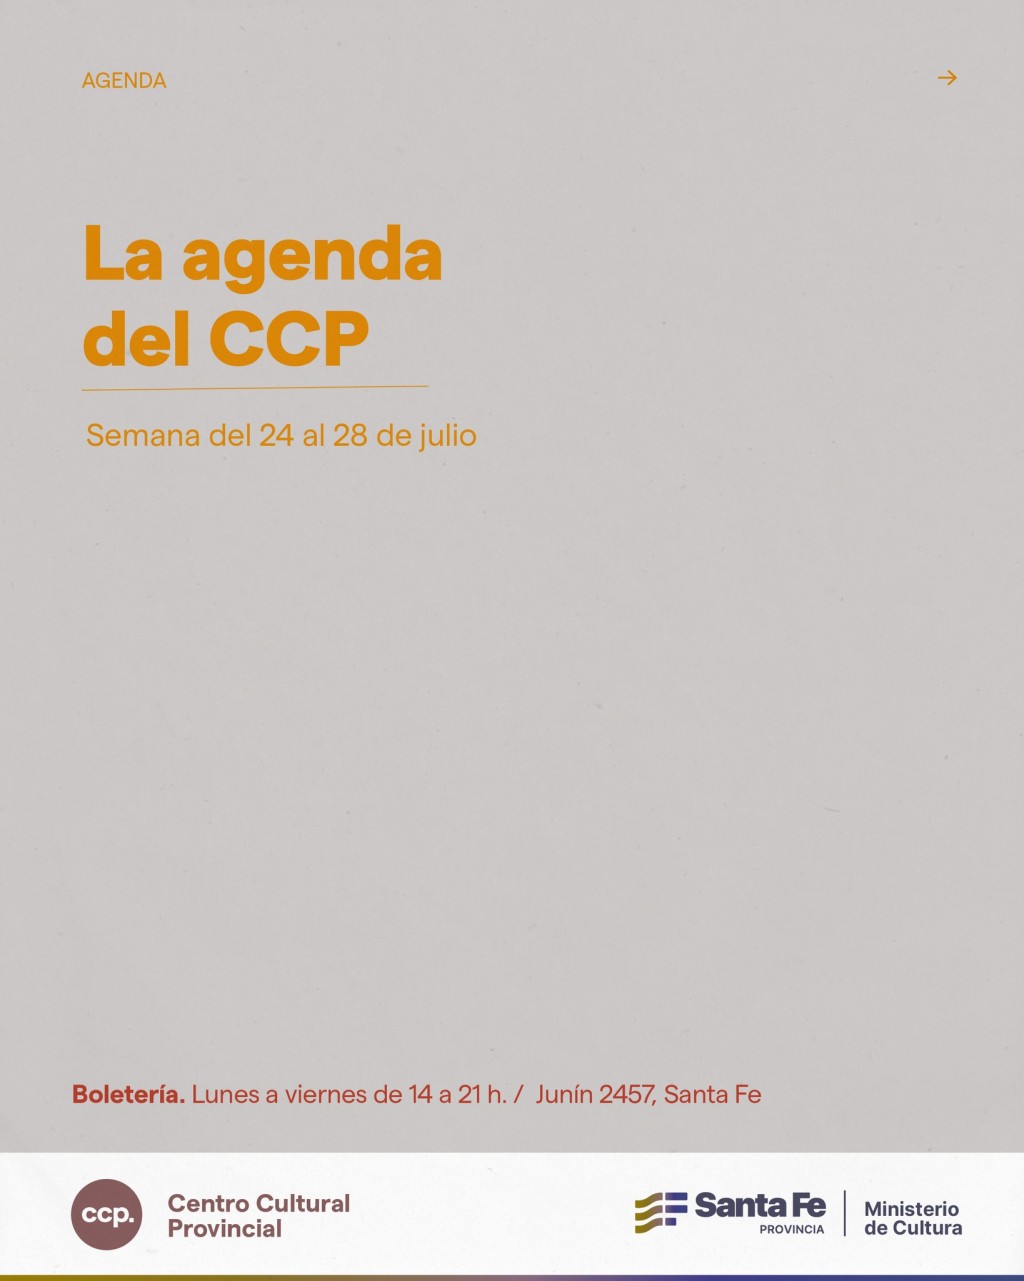 Agenda de espectáculo del 24/7 al 28/7 en el CCP